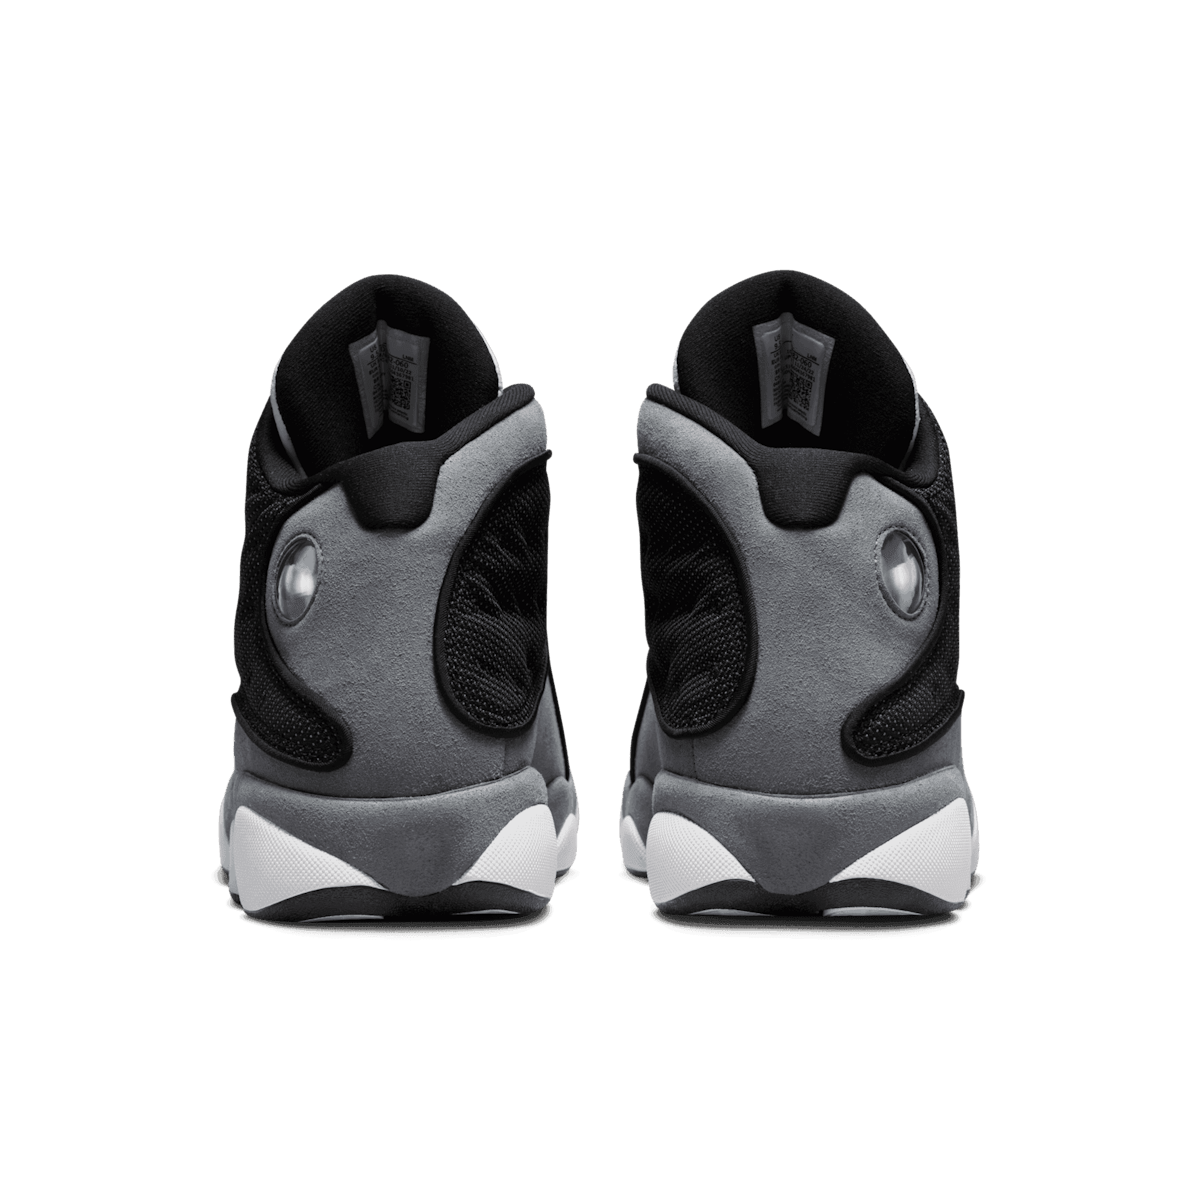 Air Jordan 13 Black Flint Angle 3